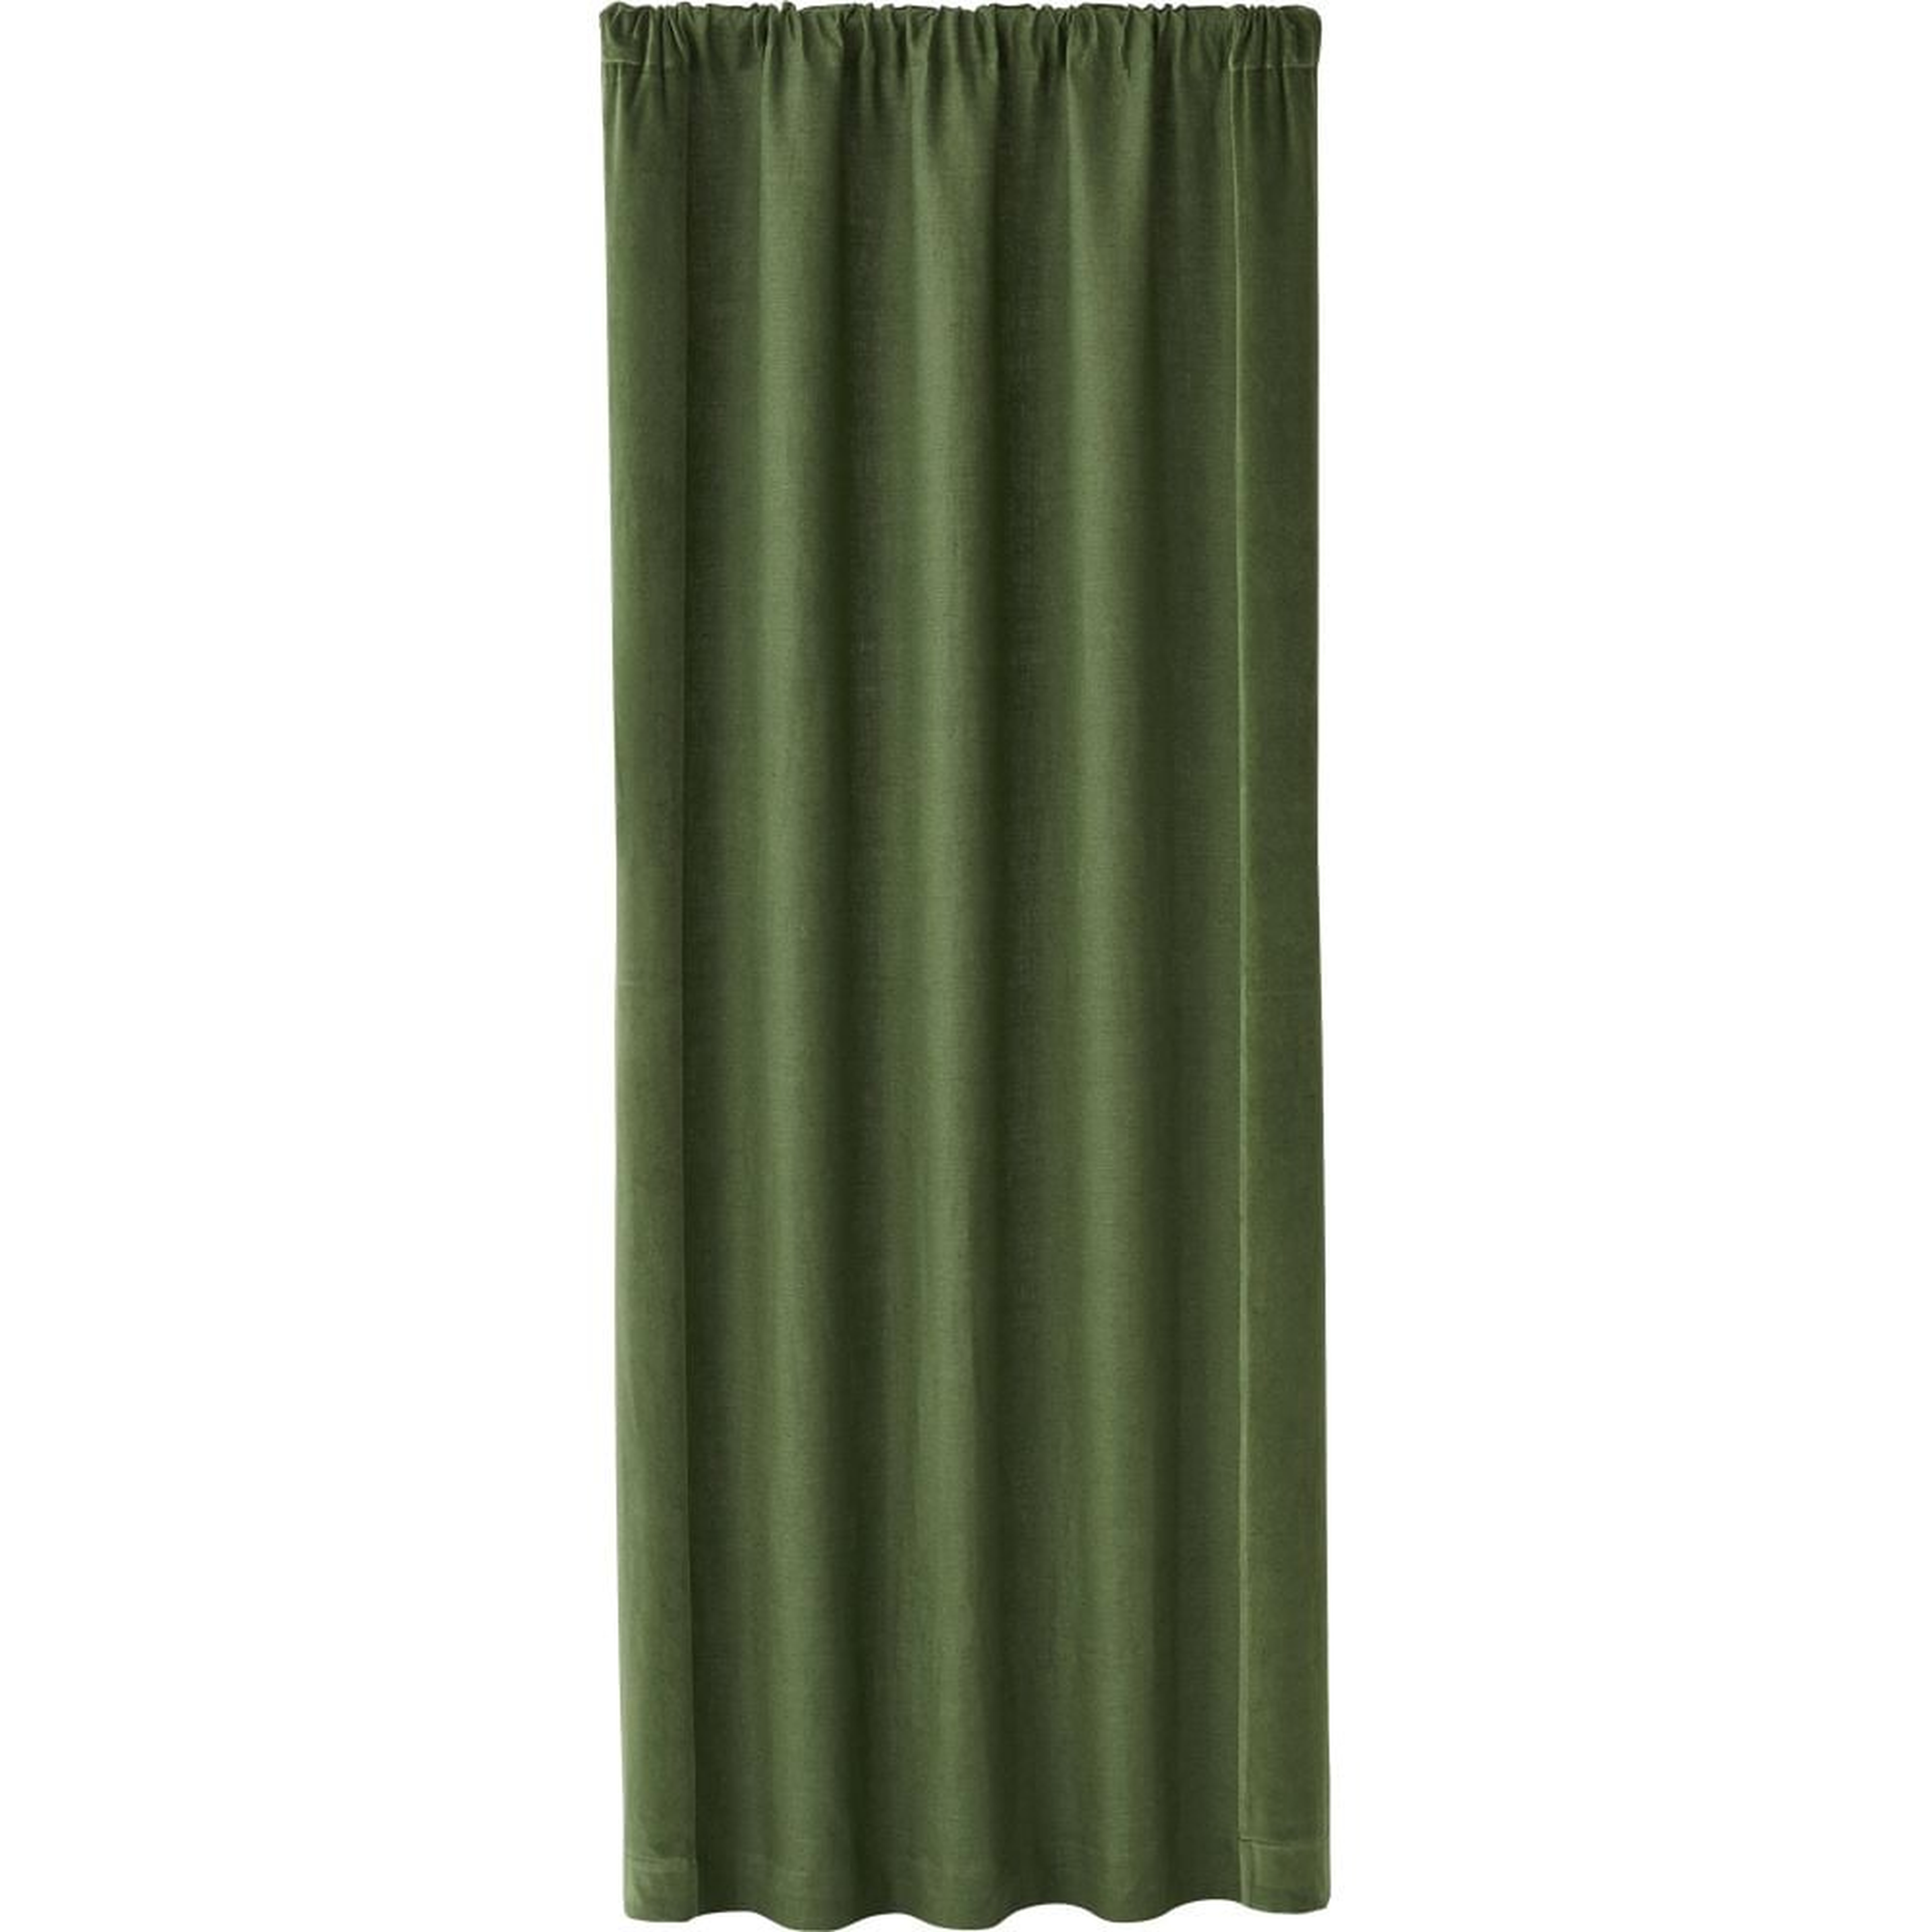 Ezria Green Linen Curtain Panel 48"x108" - Crate and Barrel